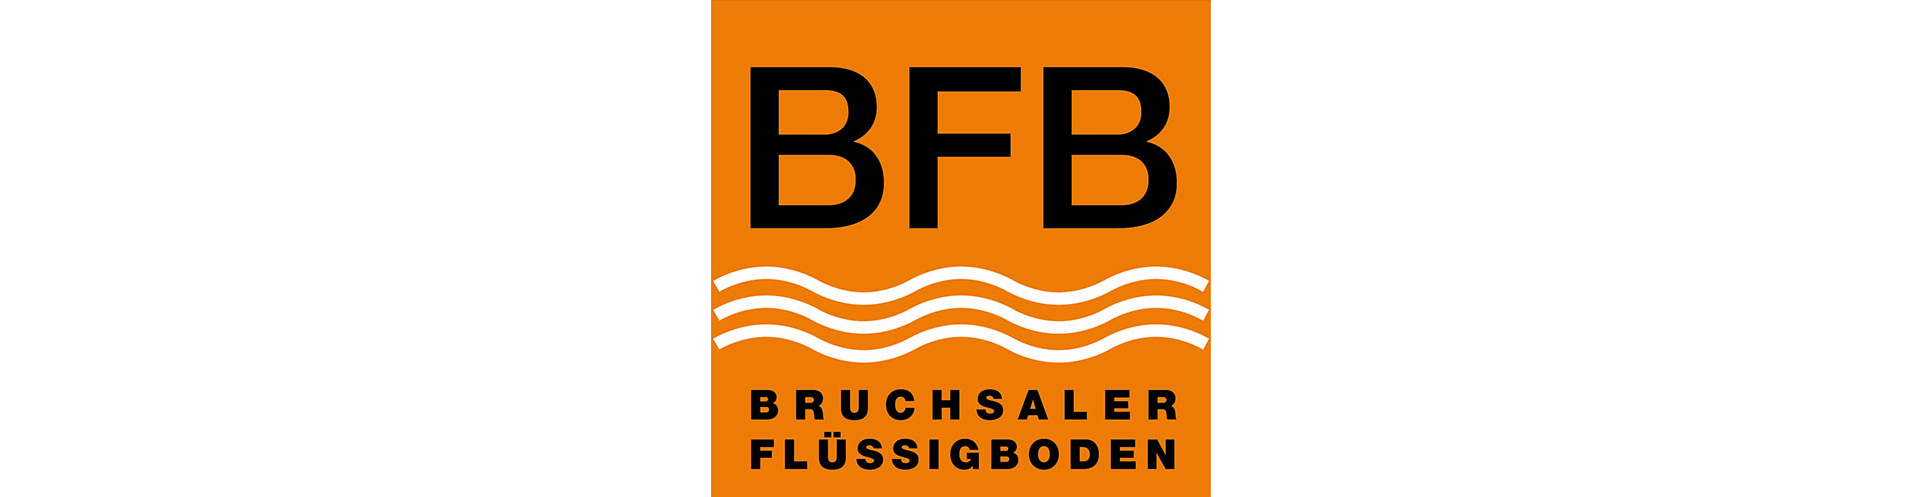 BFB Bruchsaler Flüssigboden GmbH & Co. KG